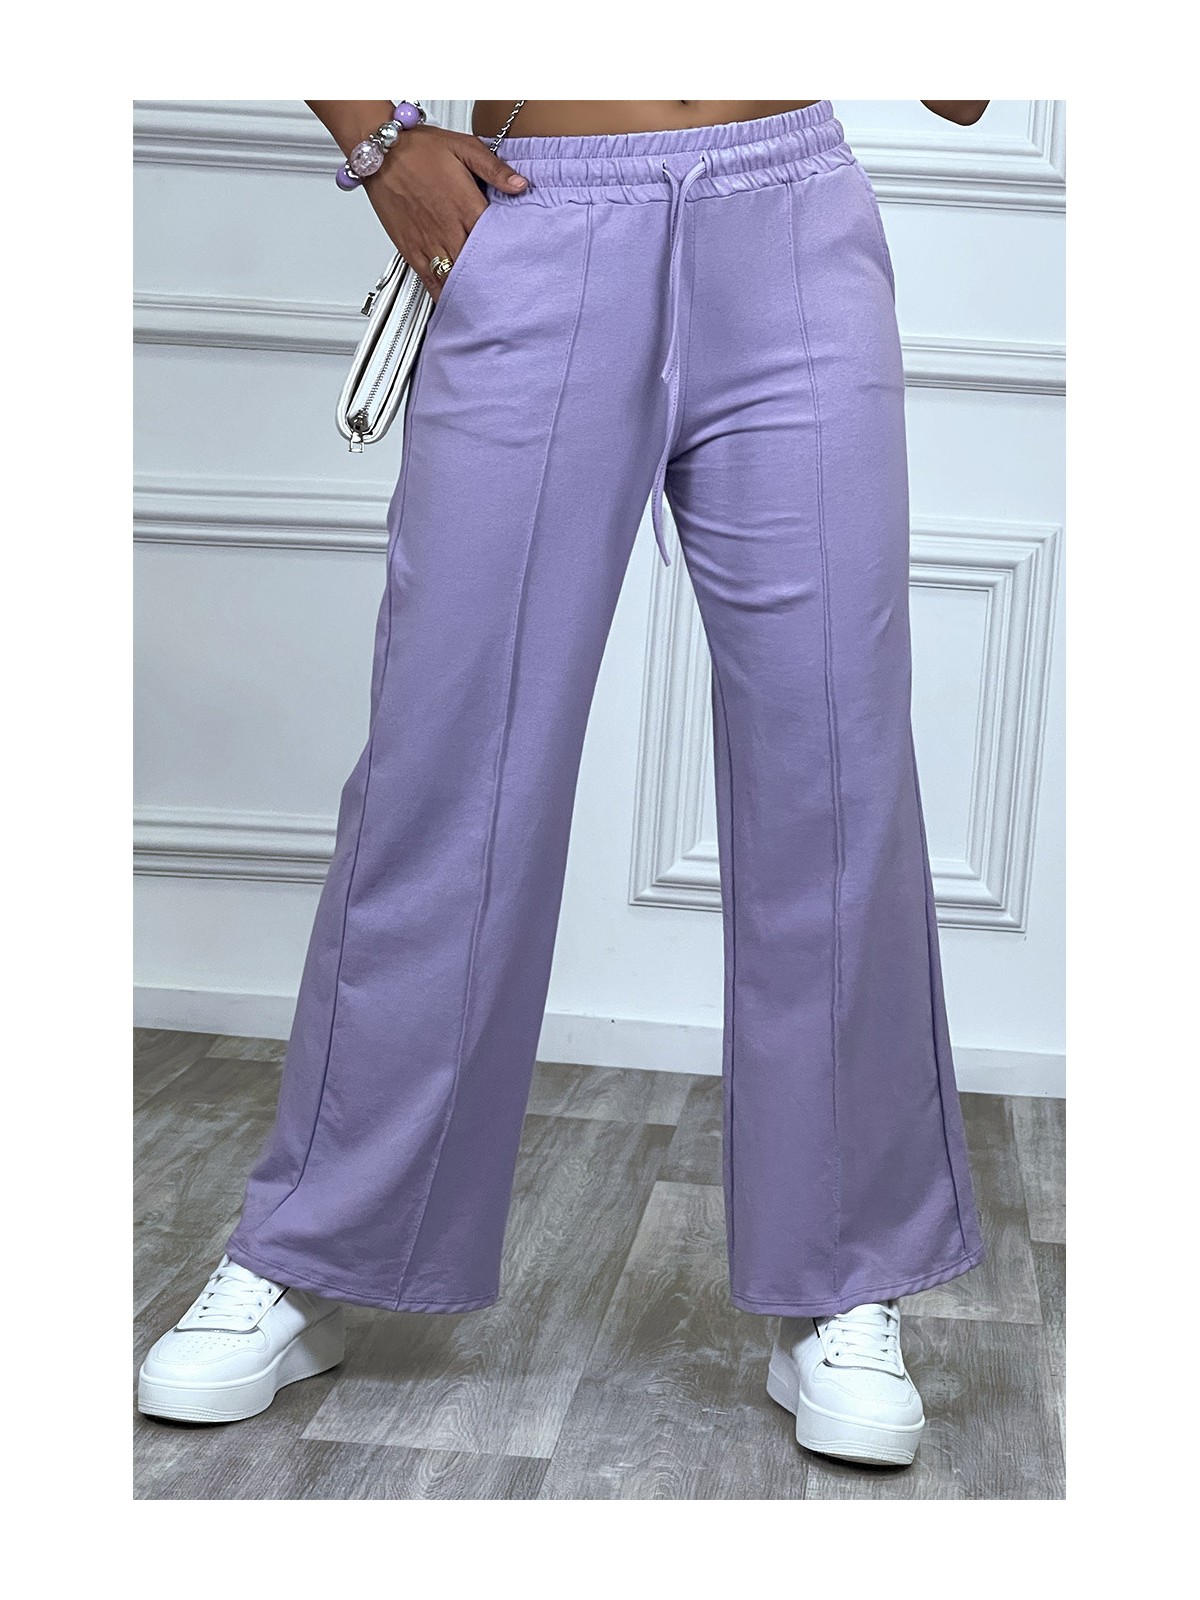 Pantalon jogging violet à élastique - 3